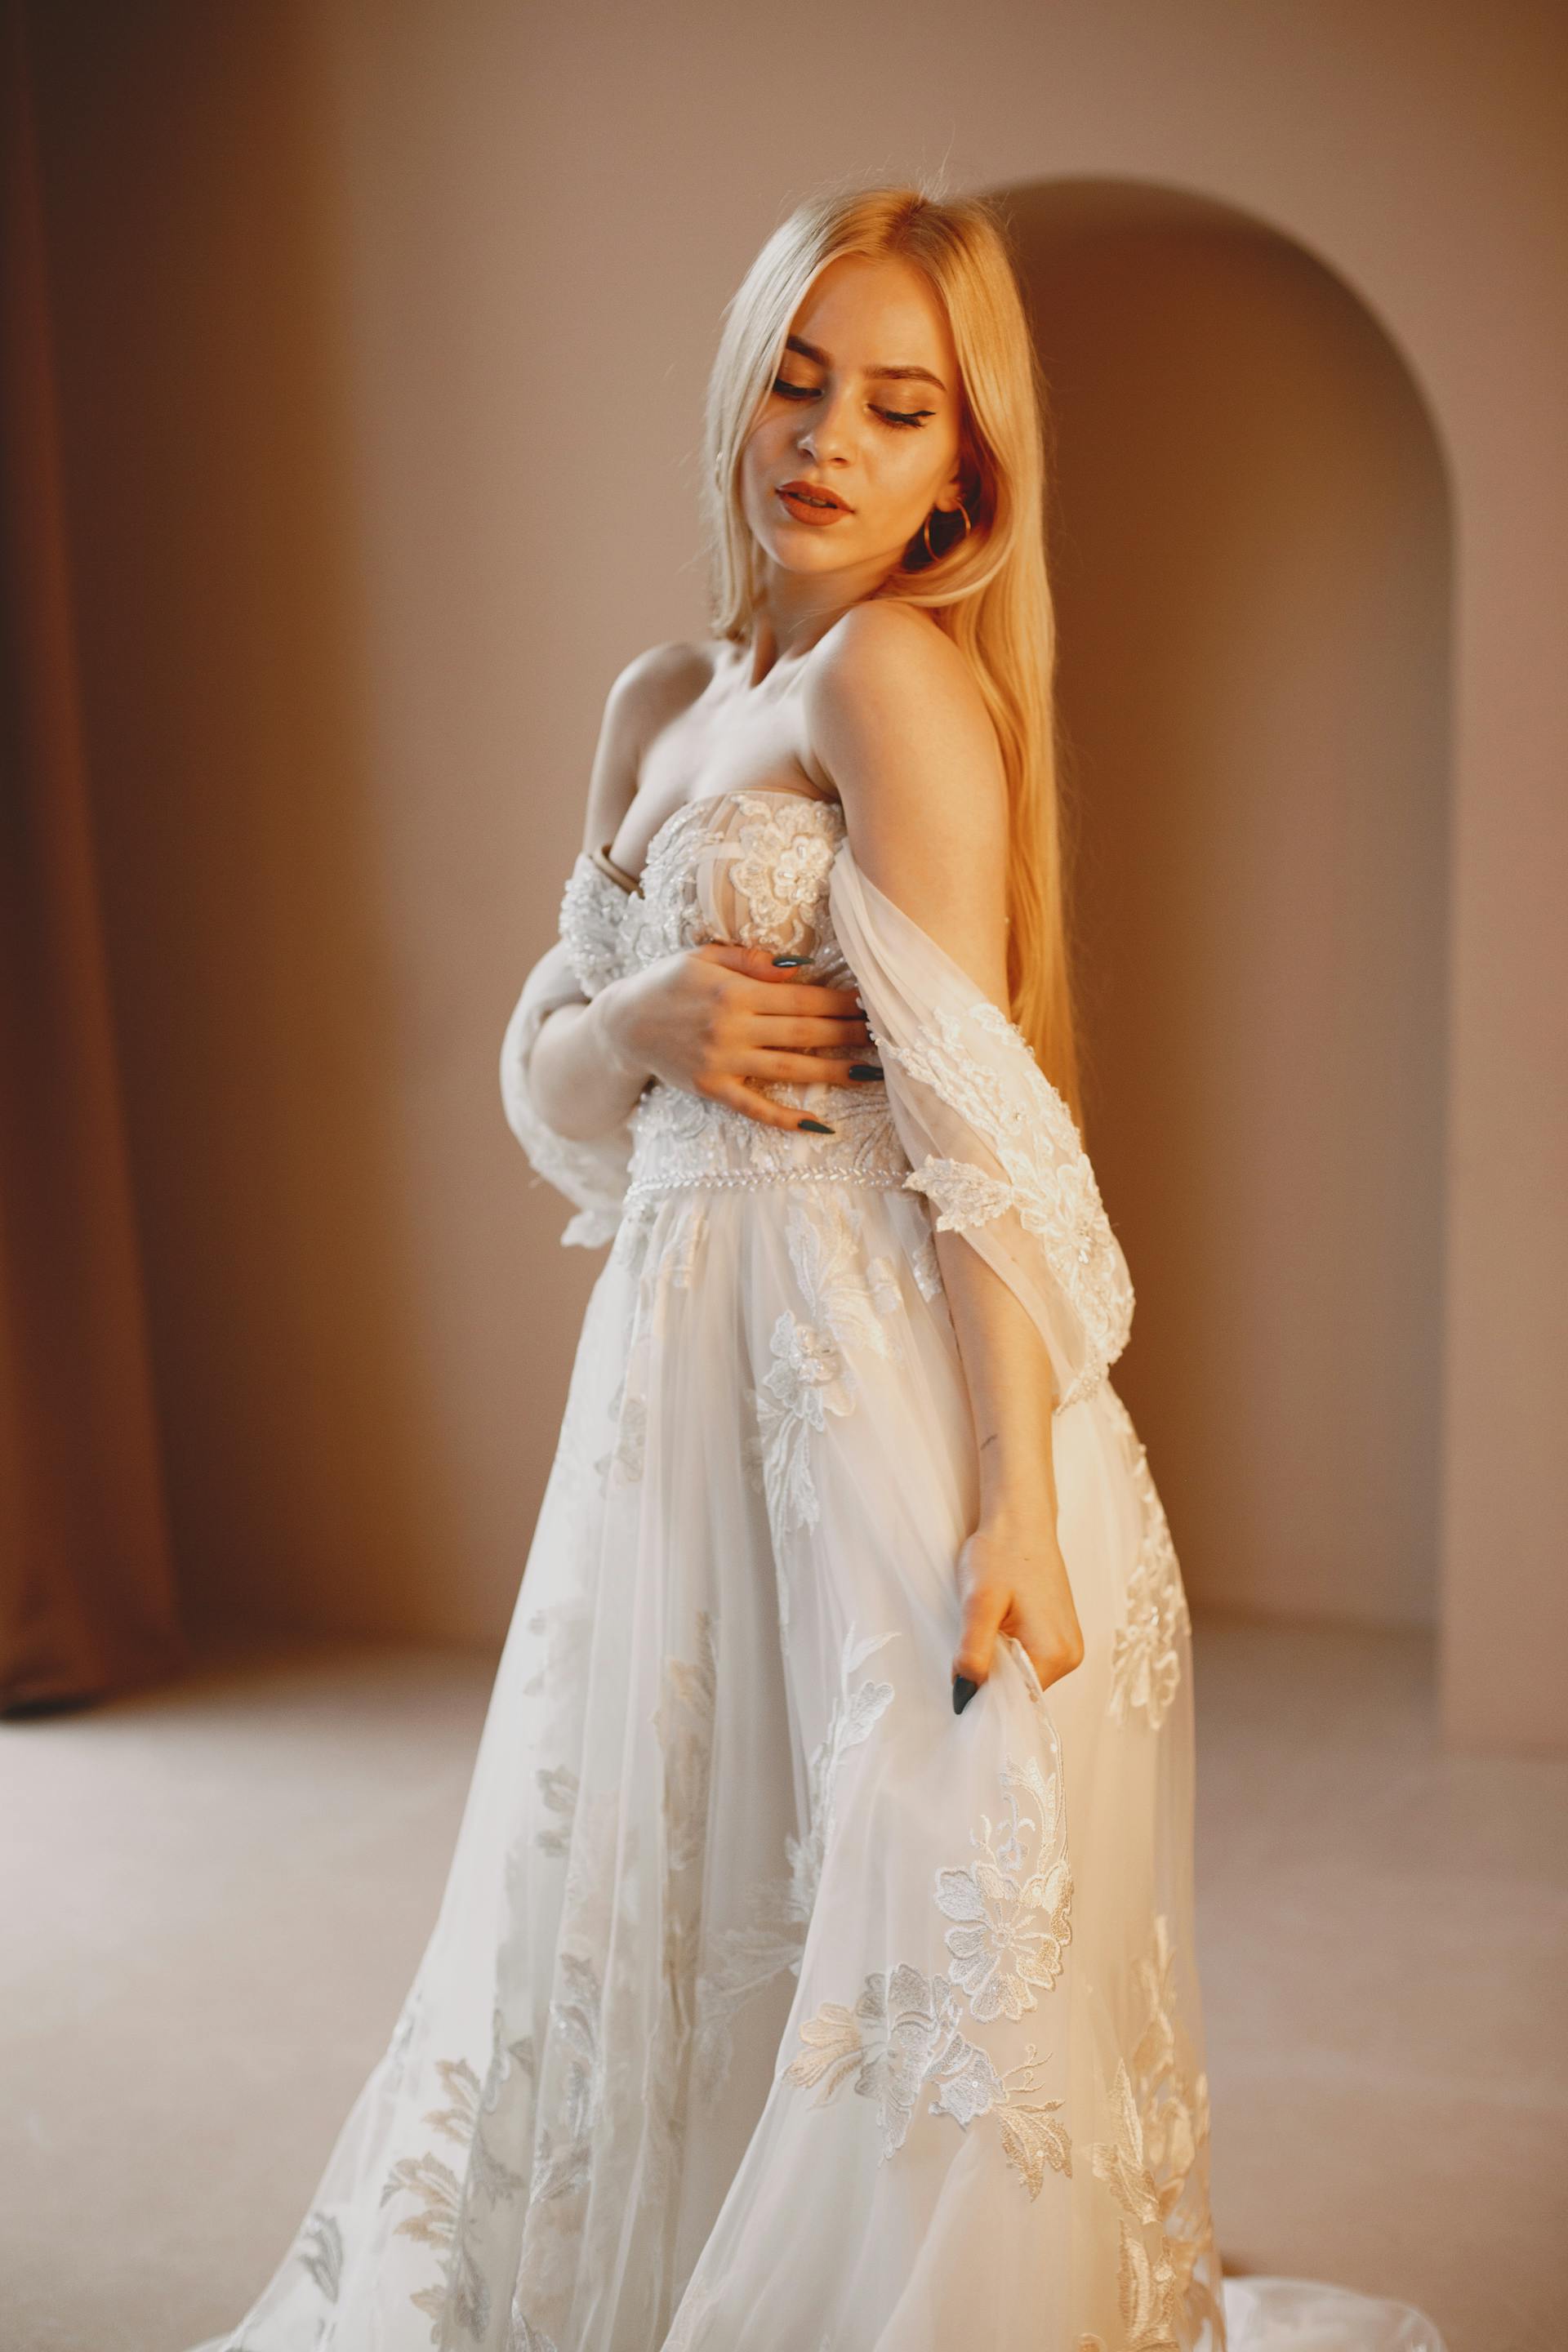 Une femme vêtue d'une robe longue en dentelle blanche | Source : Pexels